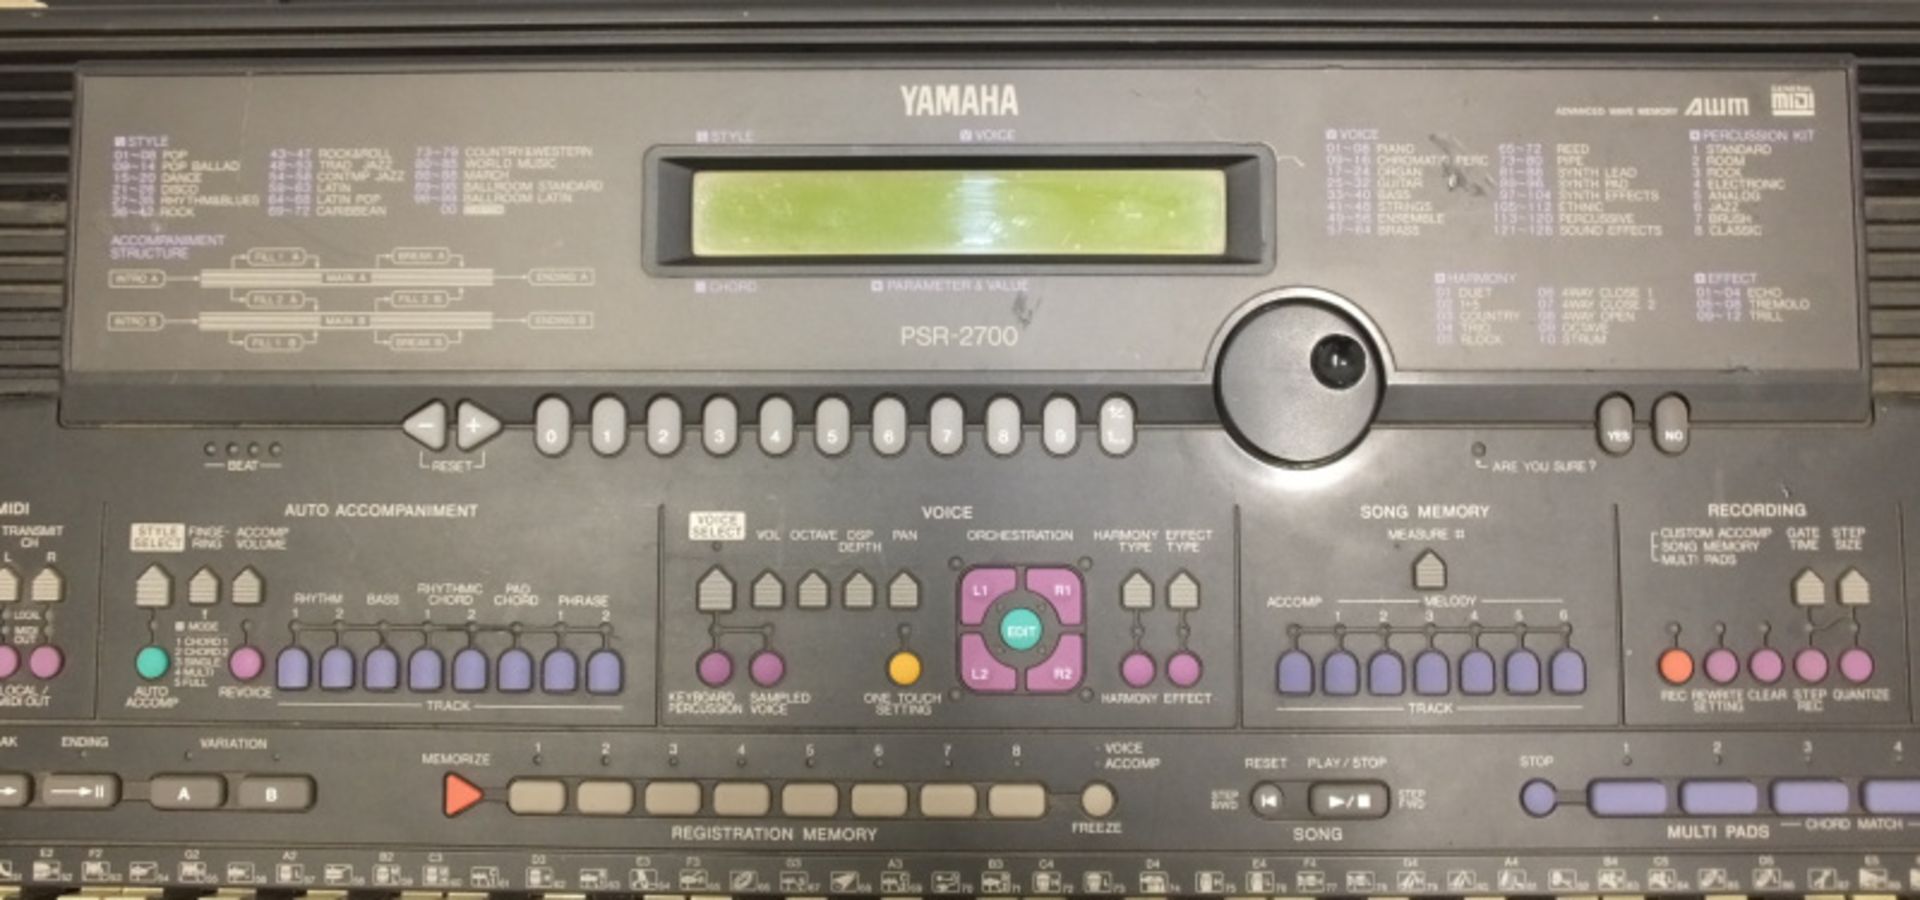 Yamaha PSR-2700 Keyboard - Image 5 of 10